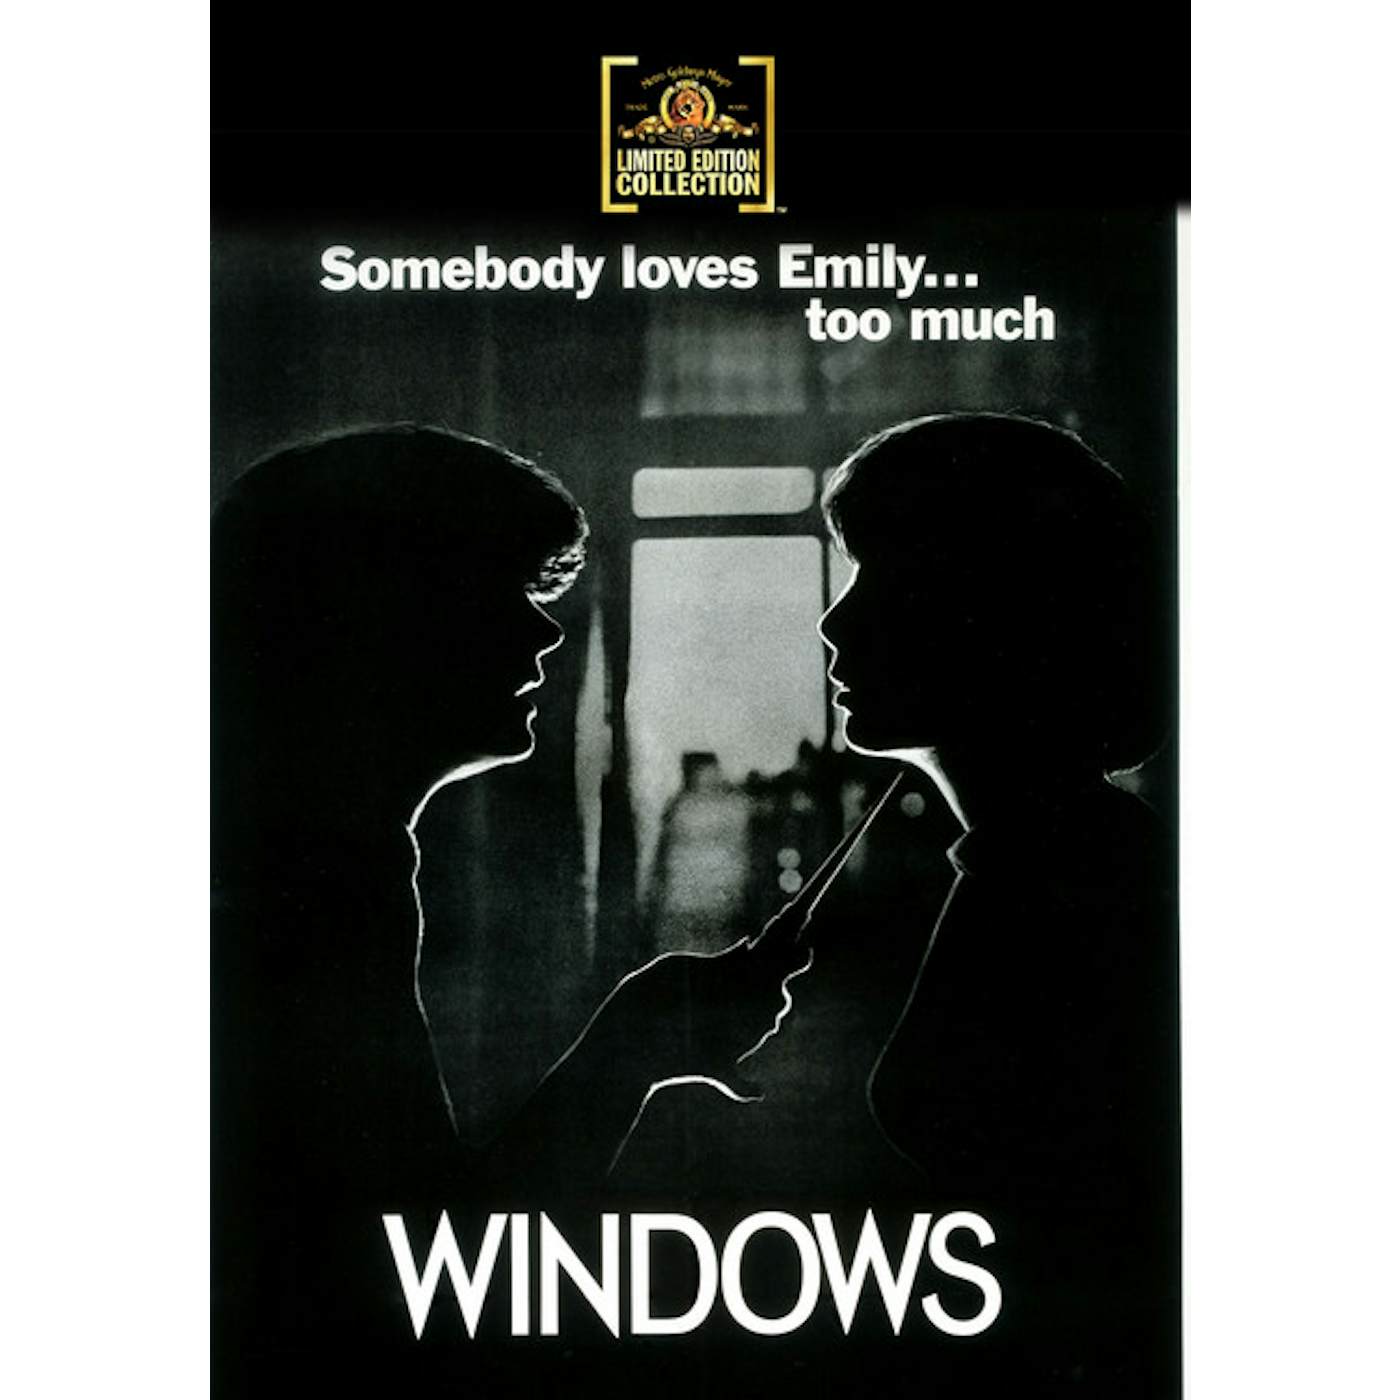 WINDOWS DVD